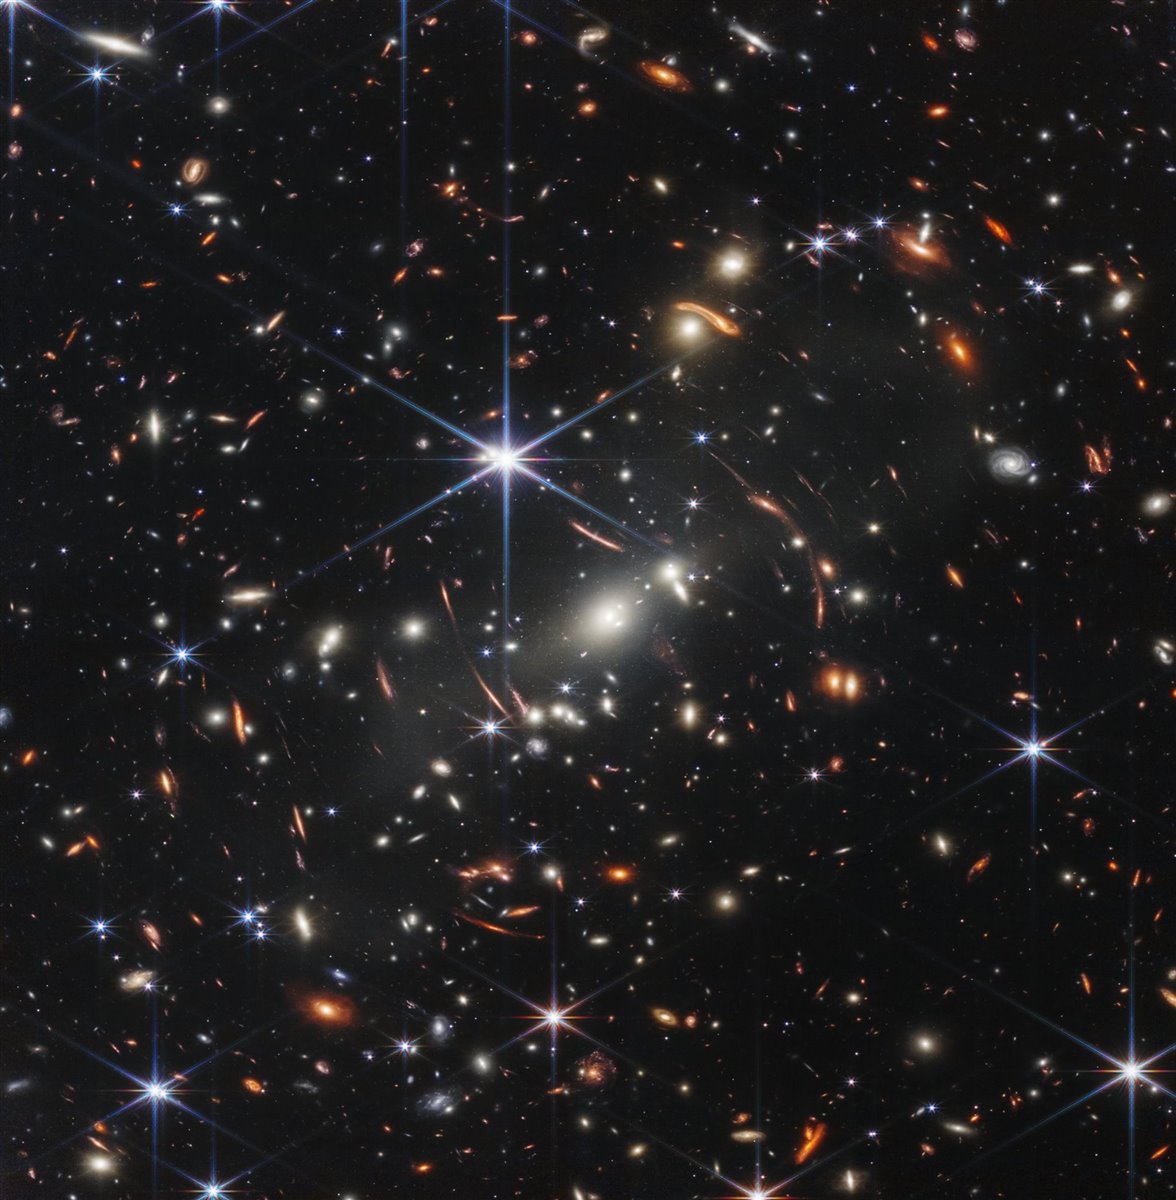 Telescopio James Webb: las mejores fotografías del espacio